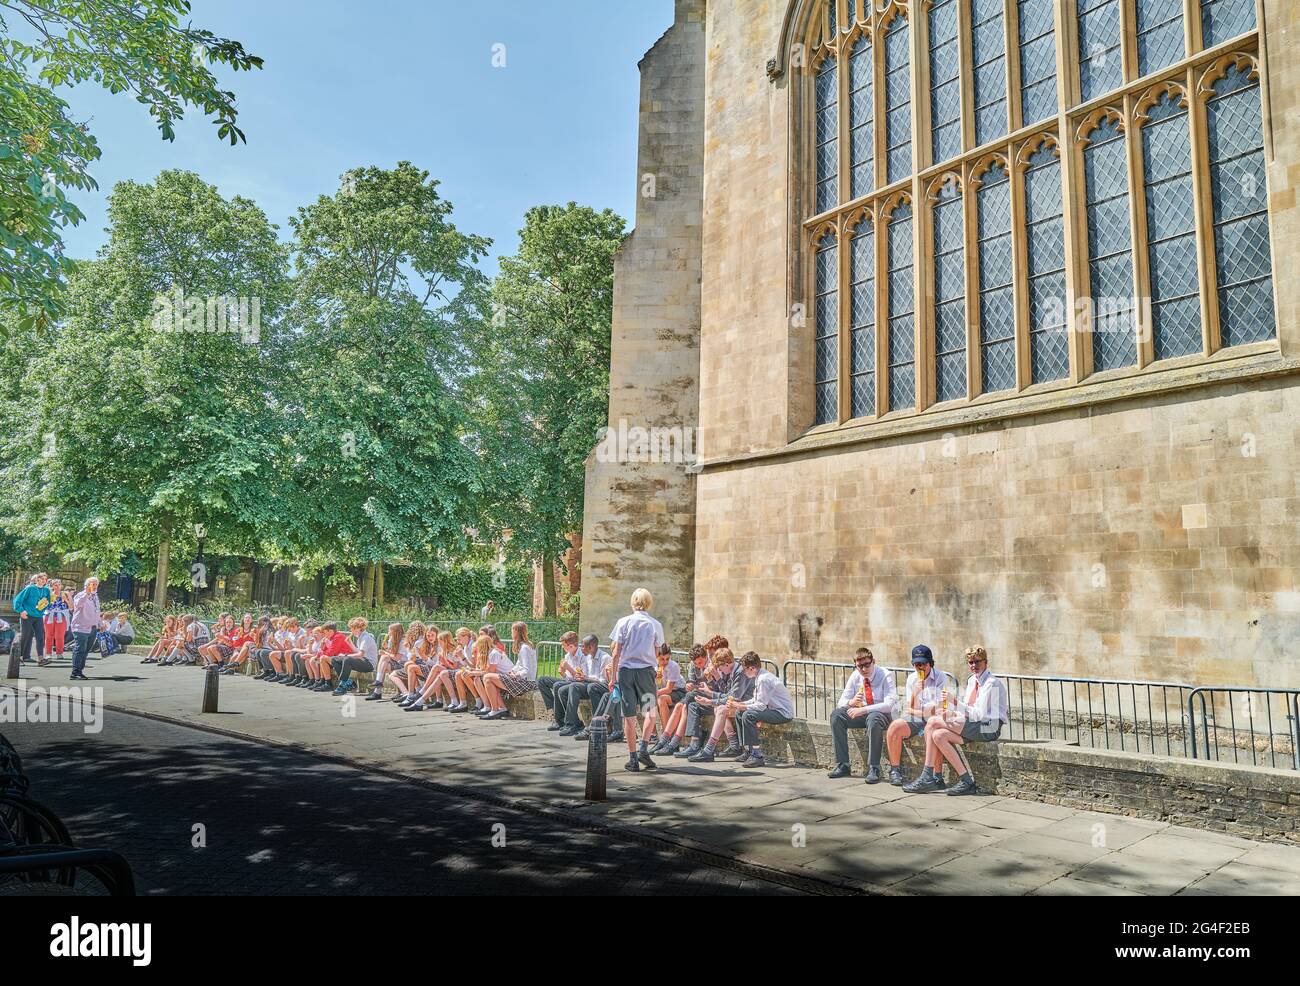 Gruppo di bambini si siedono e si rilassano sulla parete bassa fuori della cappella del Trinity College, l'università di Cambridge, Inghilterra, in una giornata estiva soleggiata. Foto Stock